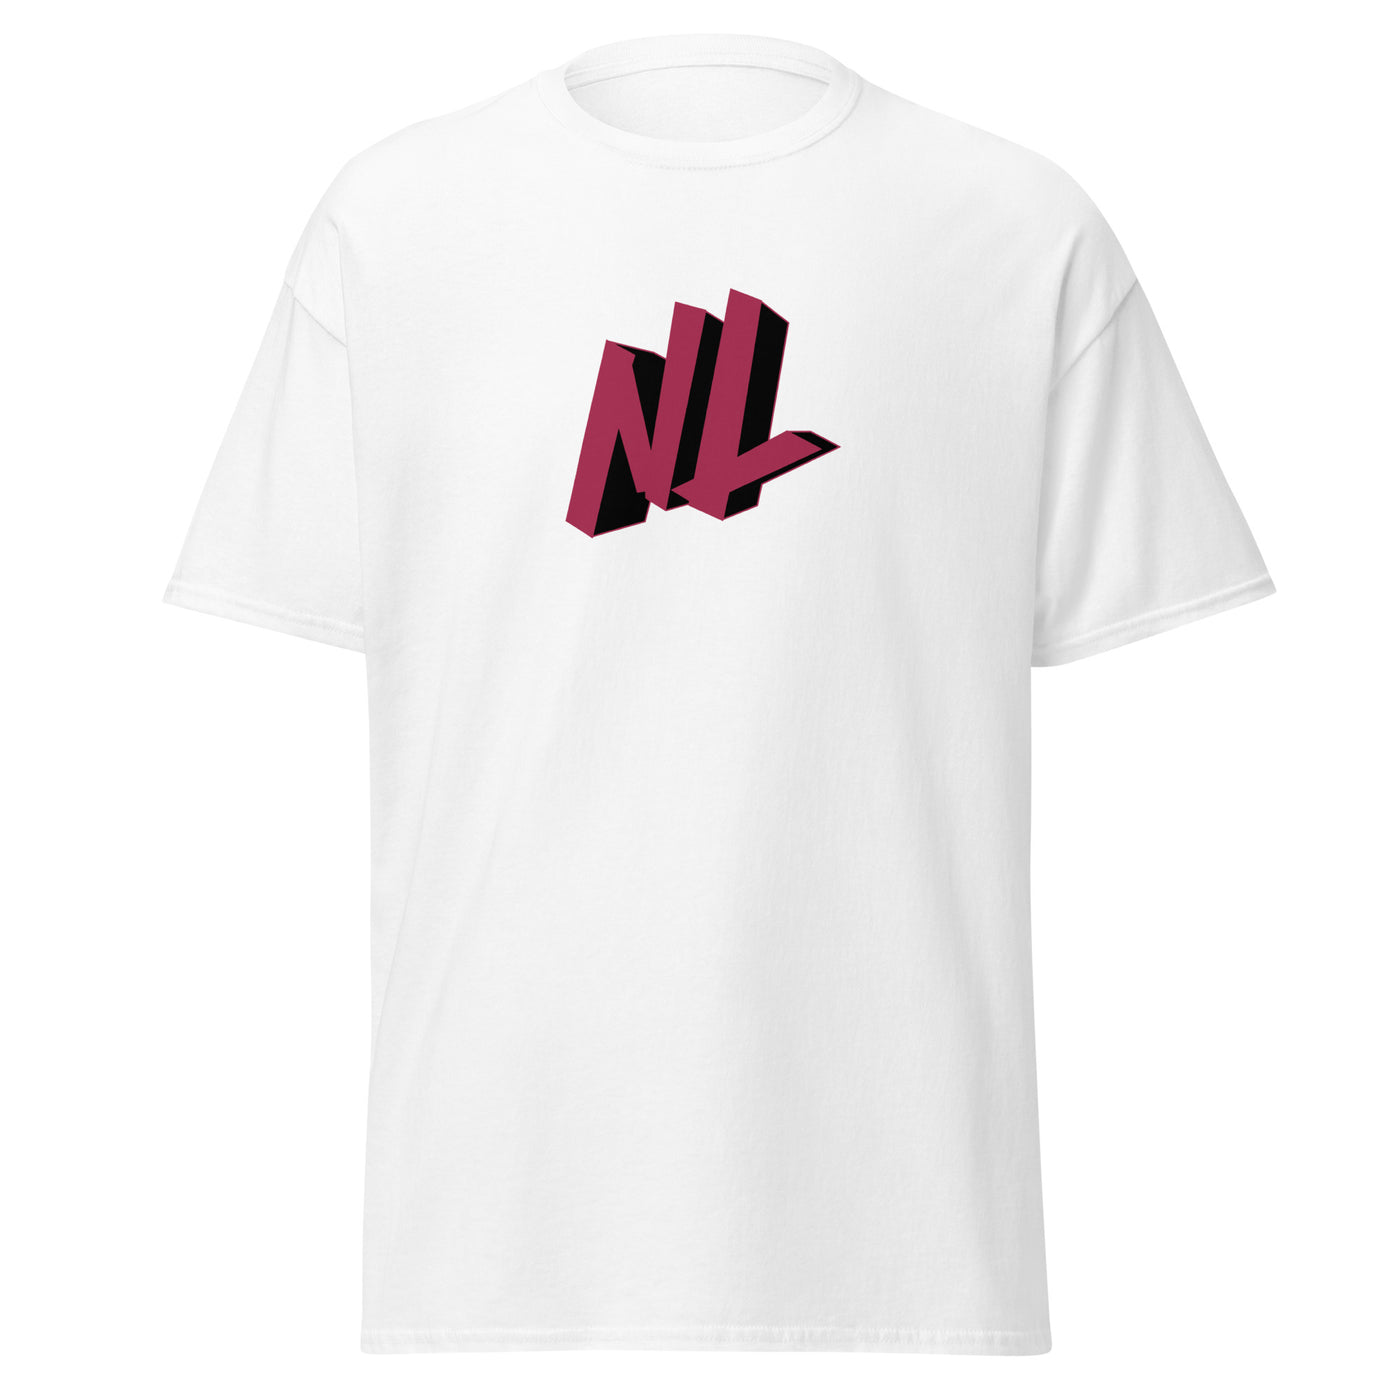 Newlook Gaming Unisex T-Shirt